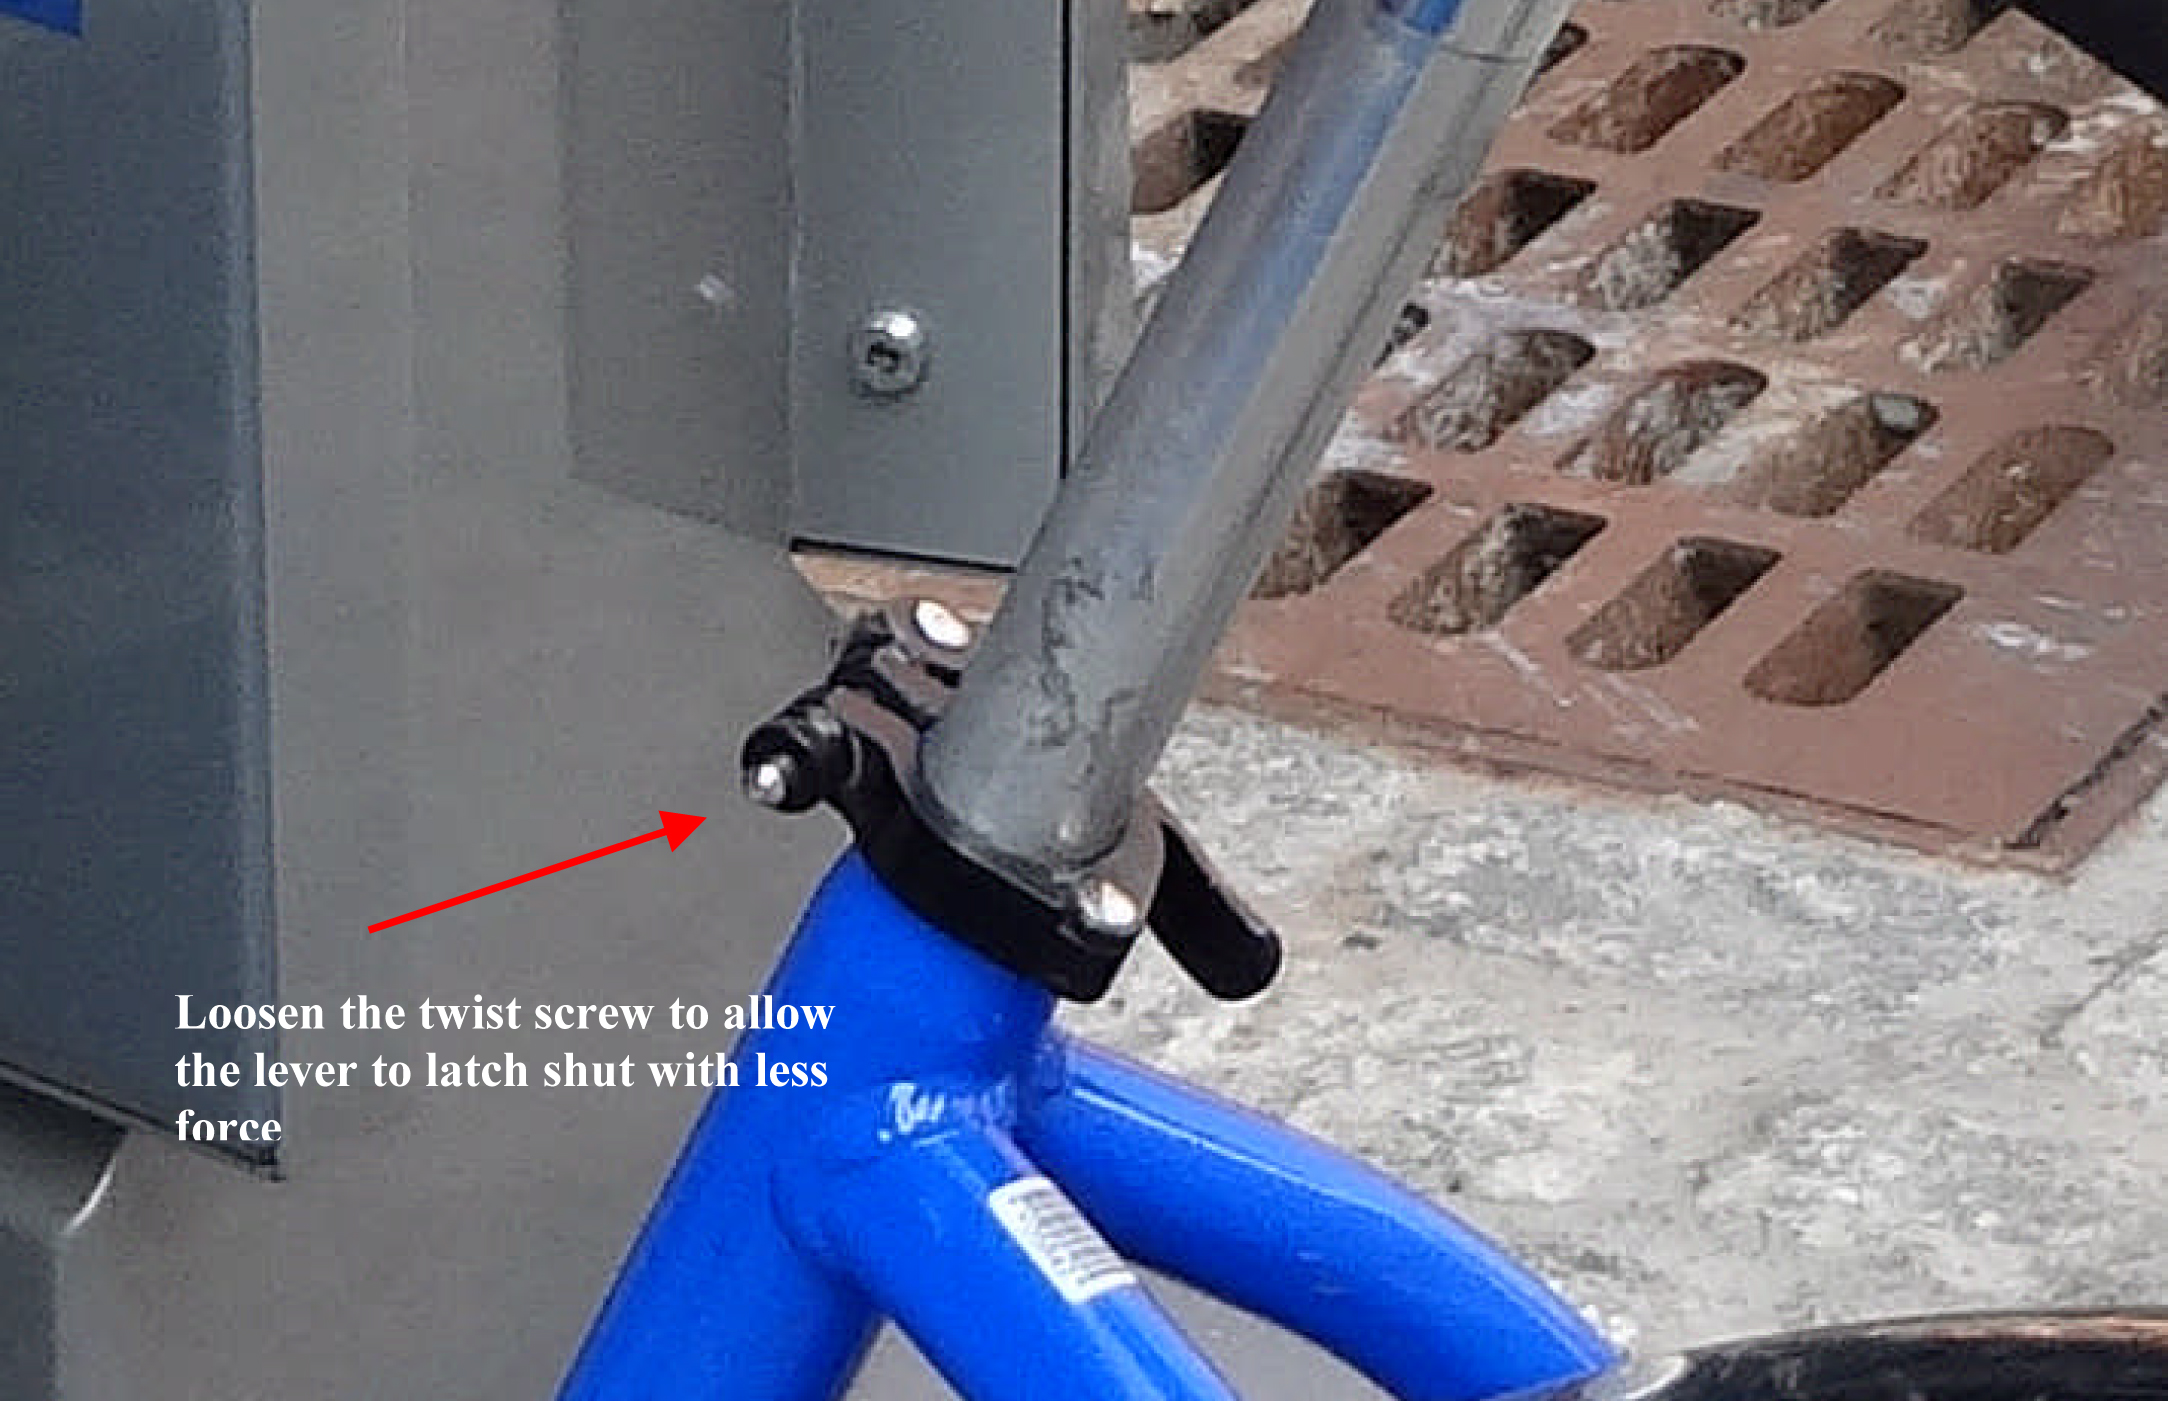 Citi Bike screw